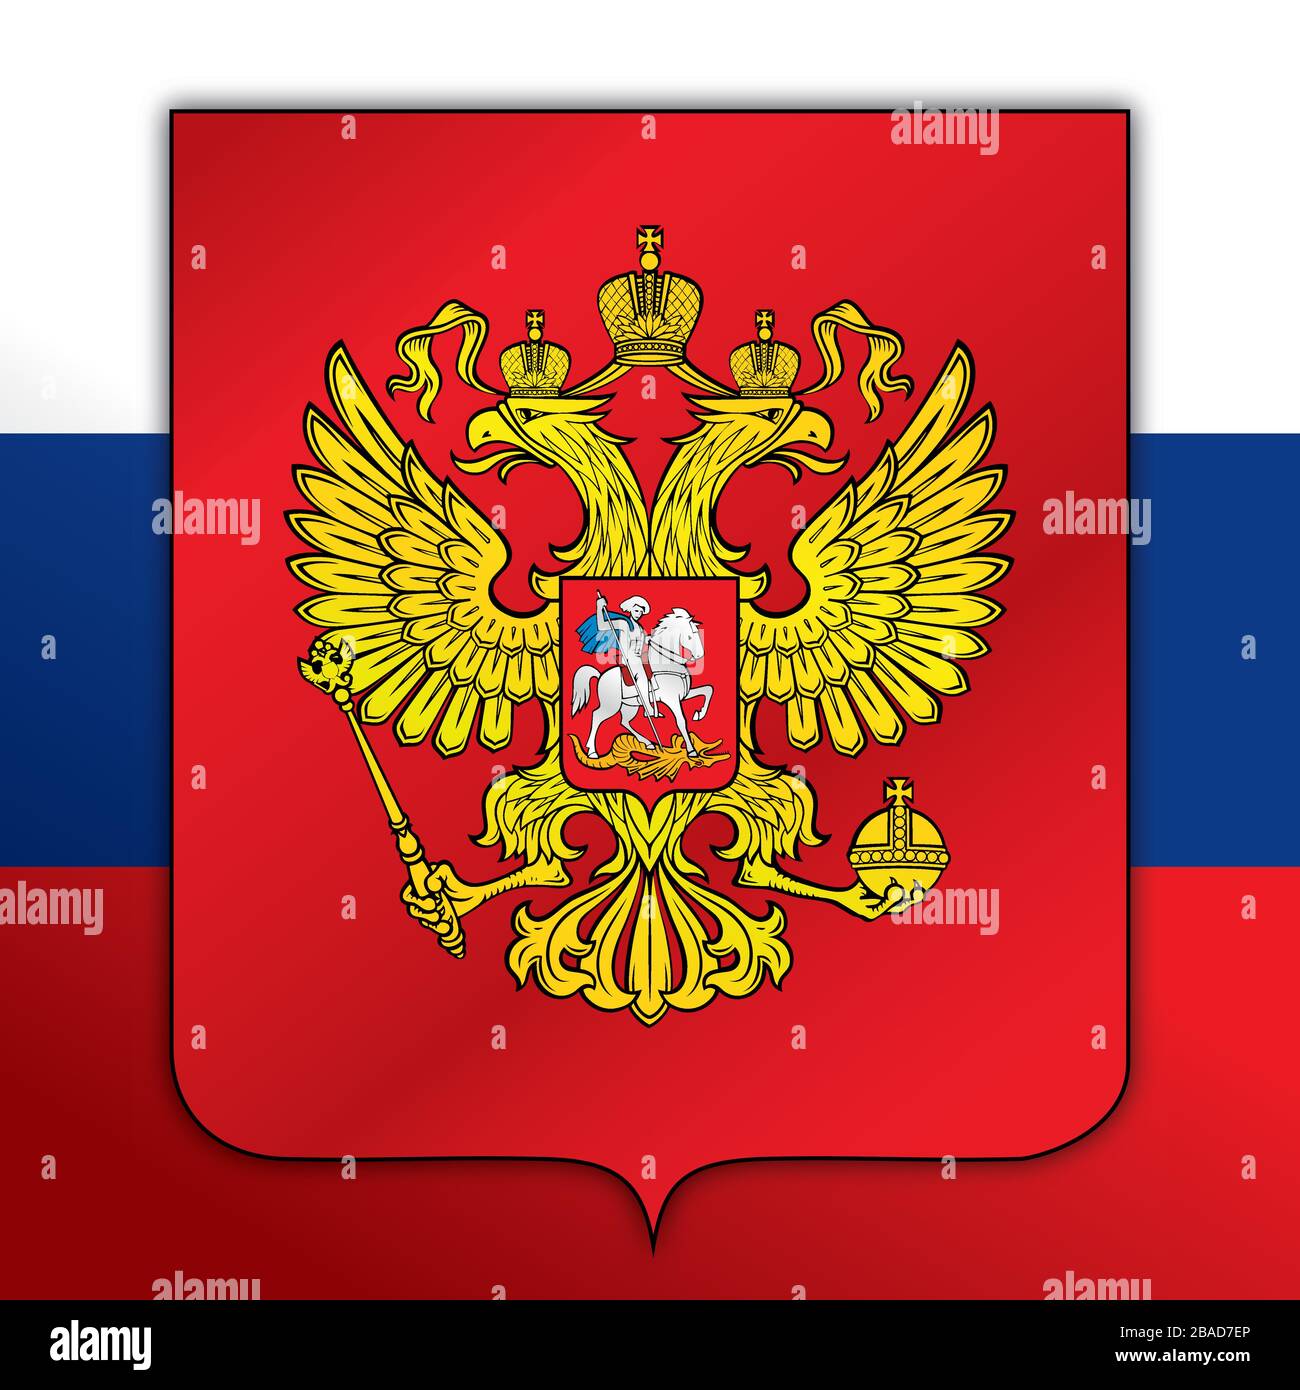 Offizielle Nationalflaggen und -Wappen der Russischen Föderation, asiatisches und europäisches Land, Vektorillustration Stock Vektor